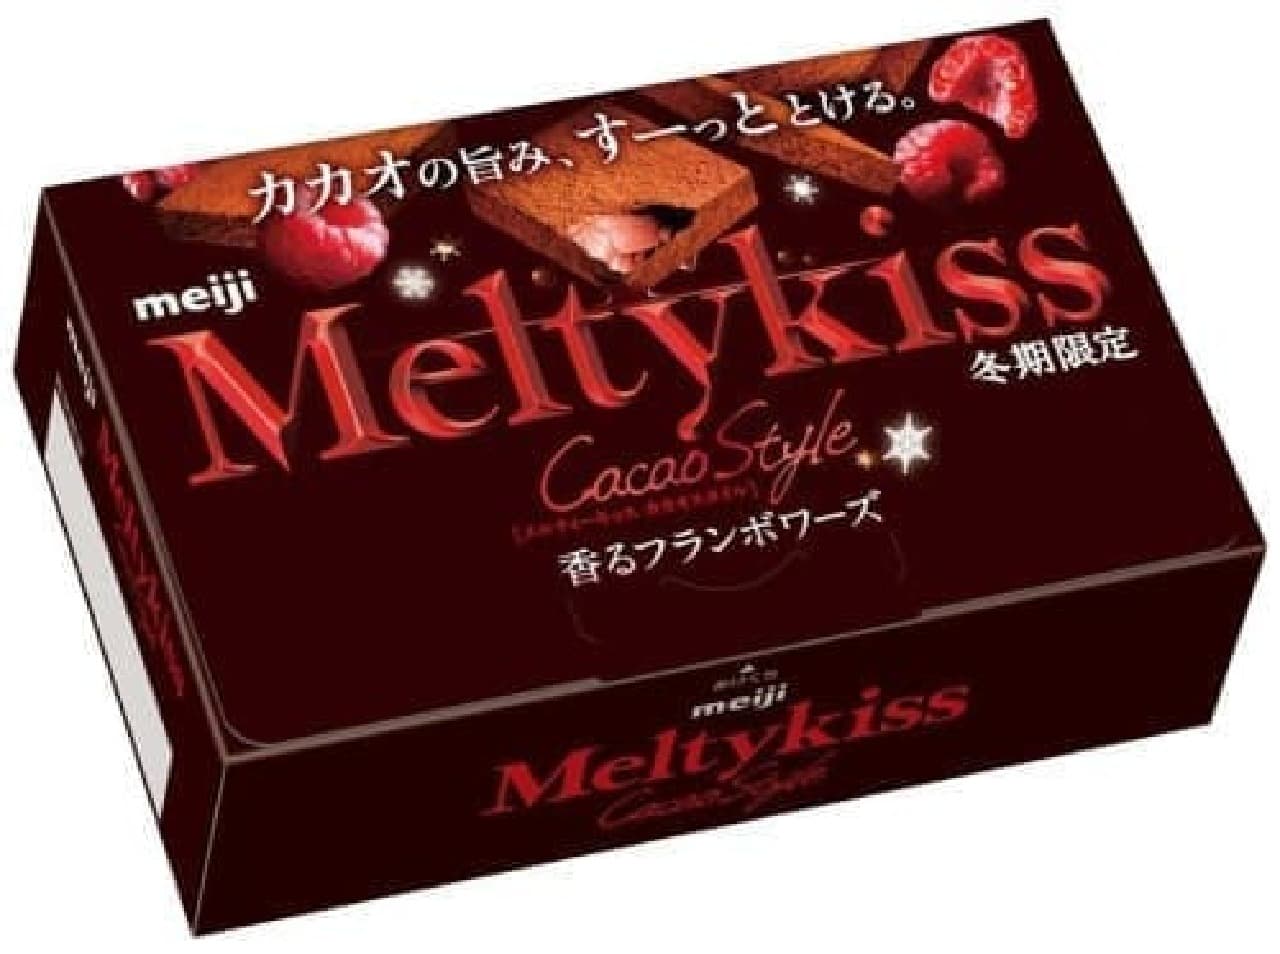 Meiji "Melty Kisska Cacao Style Fragrant Franboise"